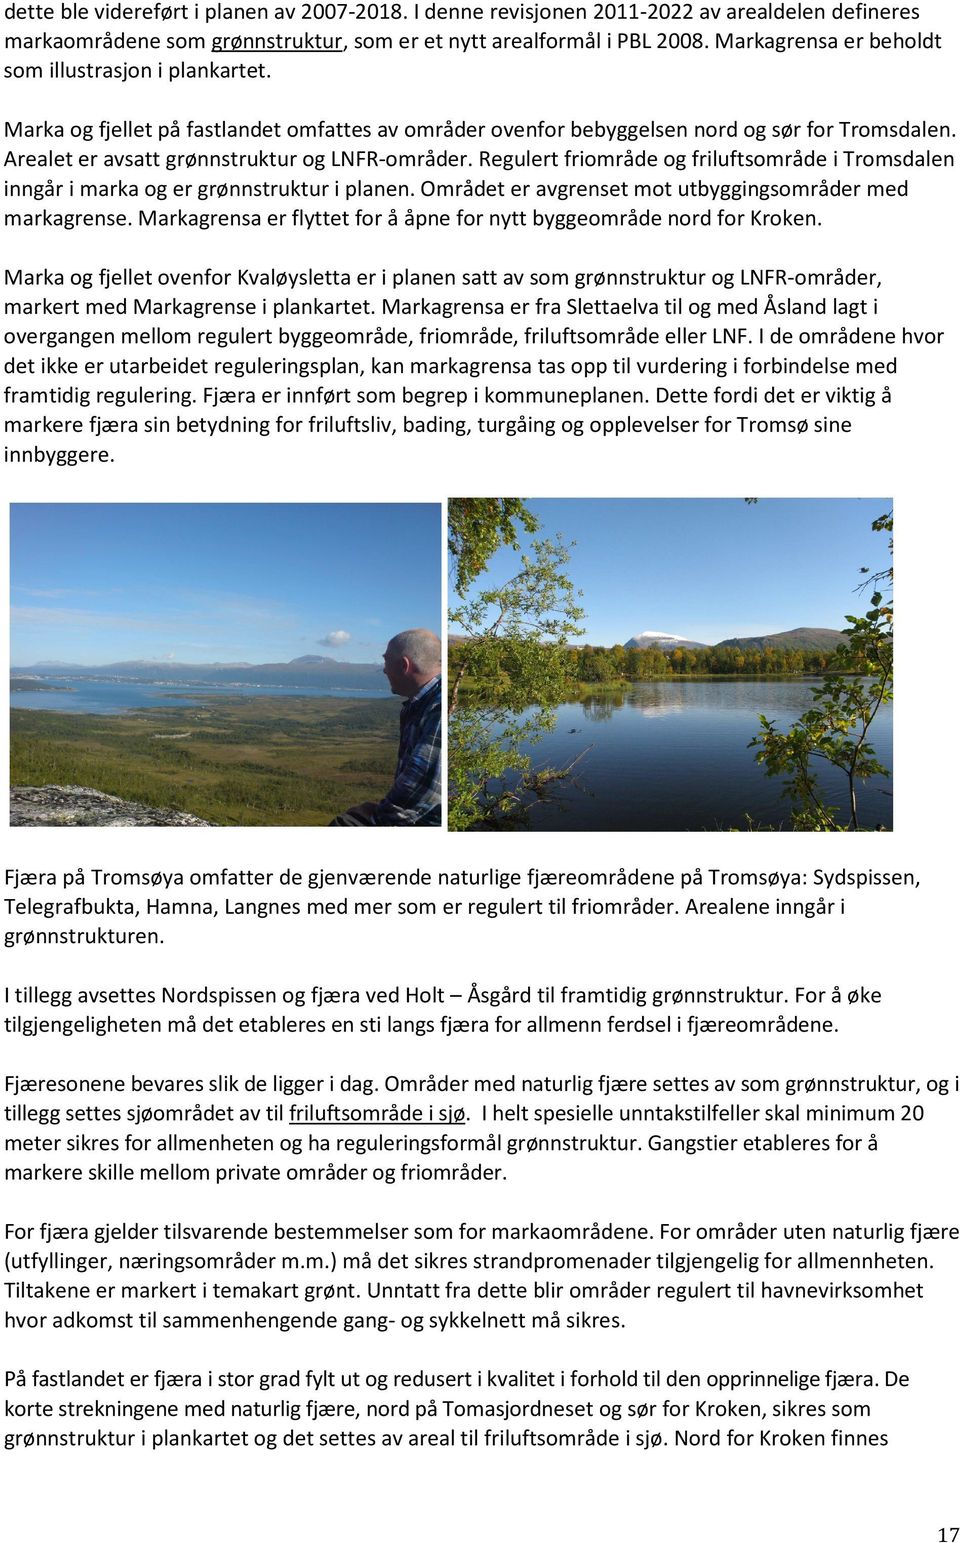 Arealet er avsatt grønnstruktur og LNFR-områder. Regulert friområde og friluftsområde i Tromsdalen inngår i marka og er grønnstruktur i planen.